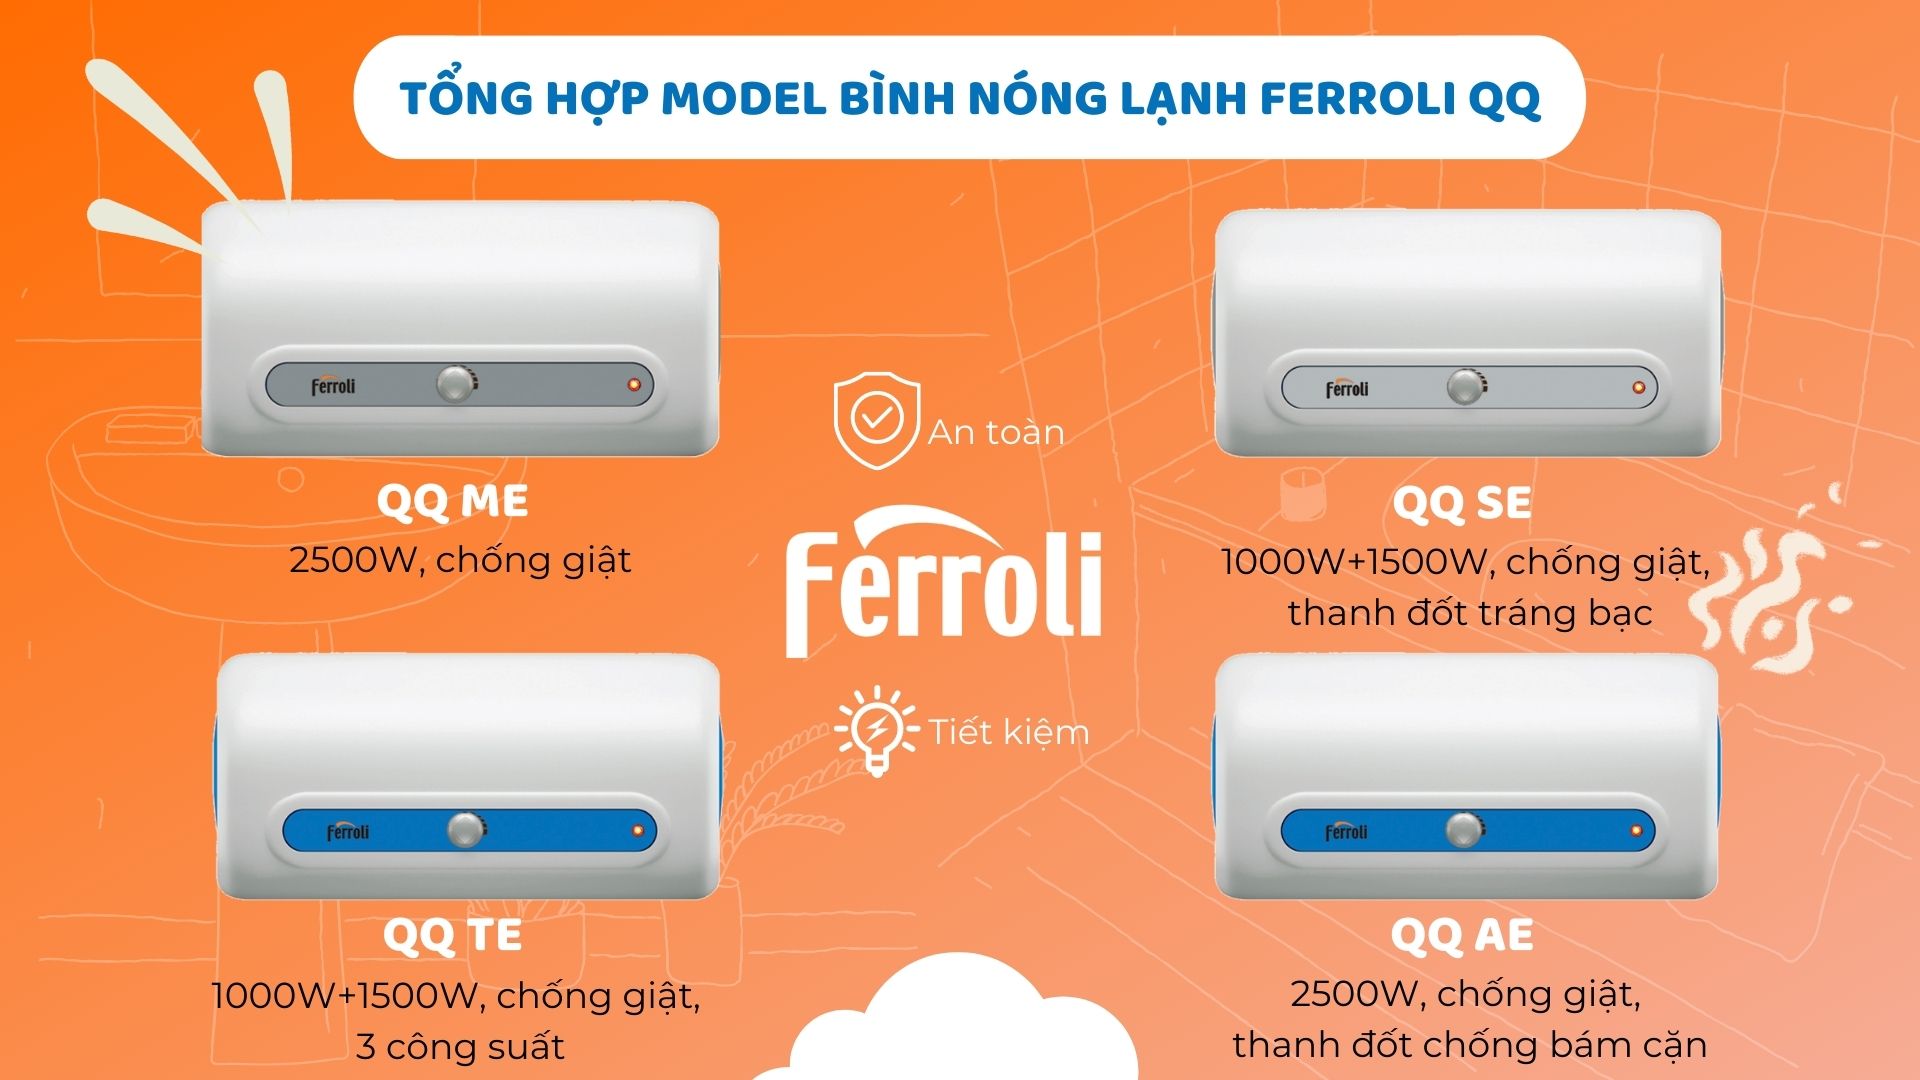 (Tiếng Việt) Giới thiệu tổng hợp các mẫu bình nóng lạnh gián tiếp Ferroli QQ